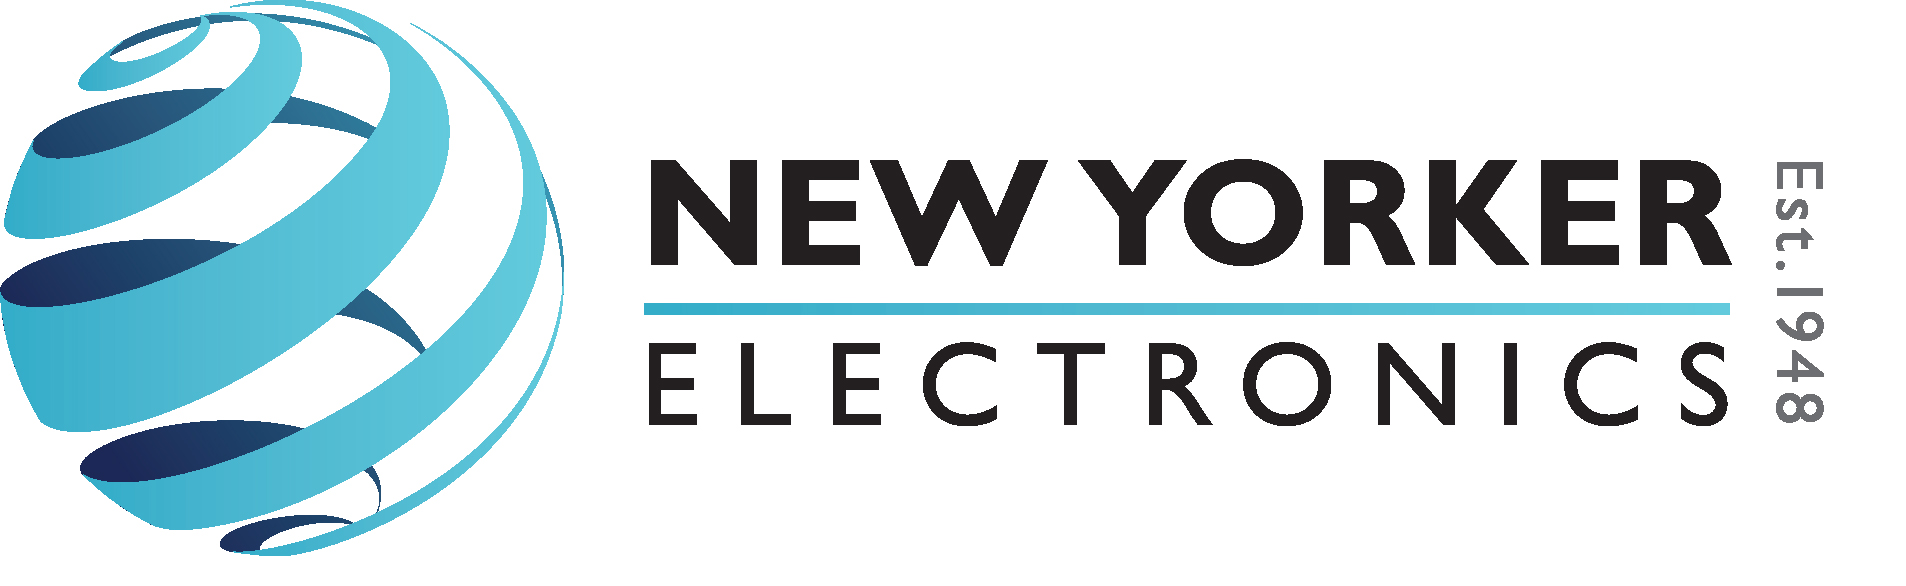 NYE - logo.jpg